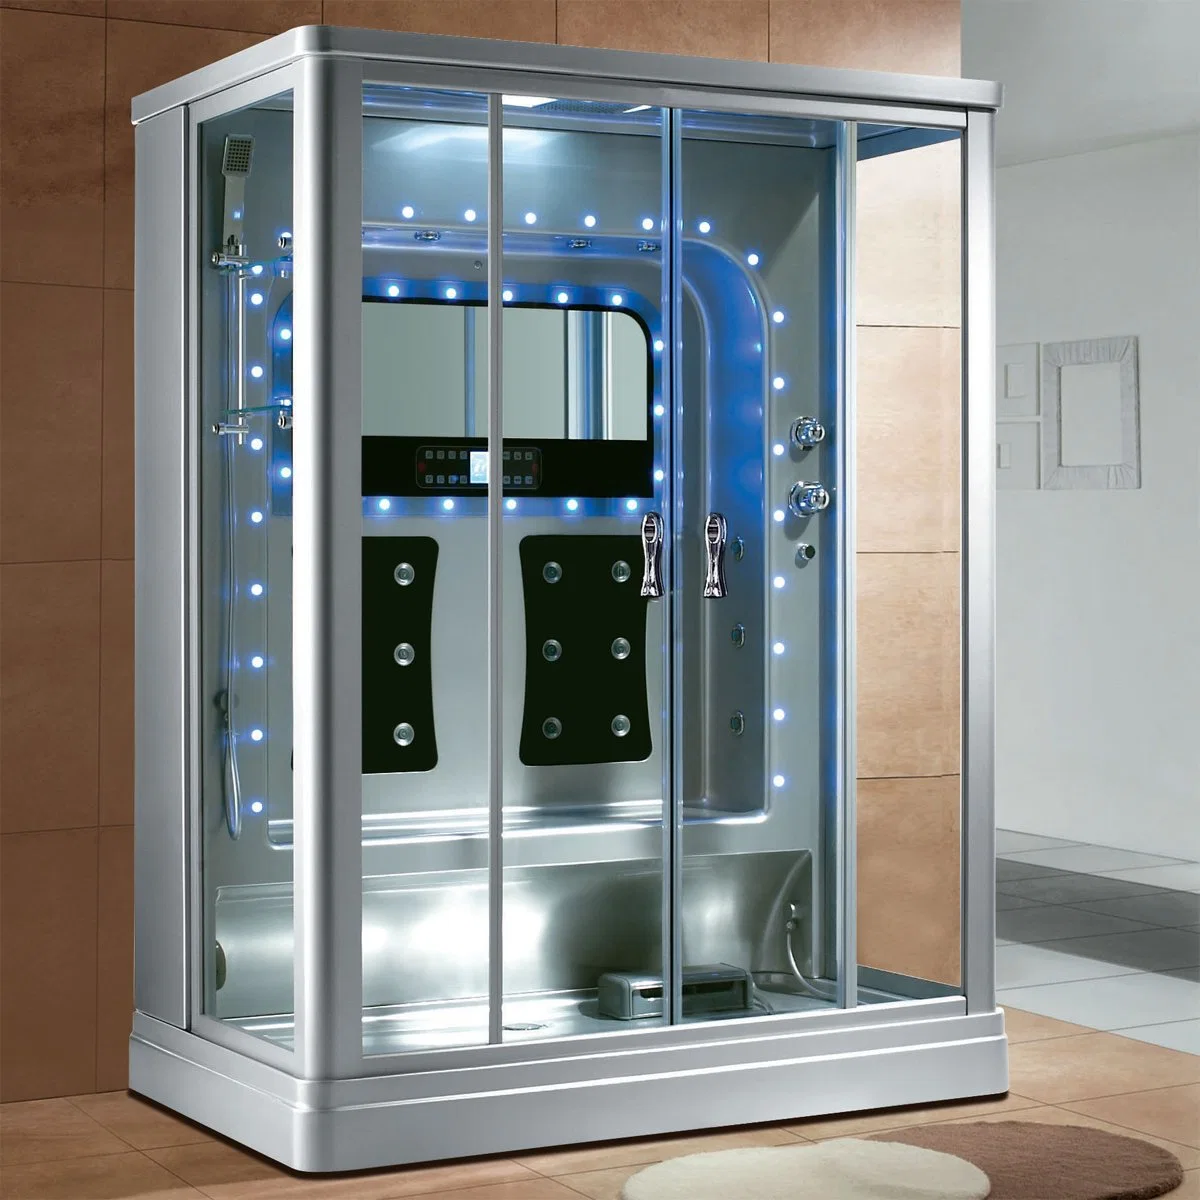 Woma usine complète de luxe intérieure salle de douche à vapeur de la cabine (Y847)